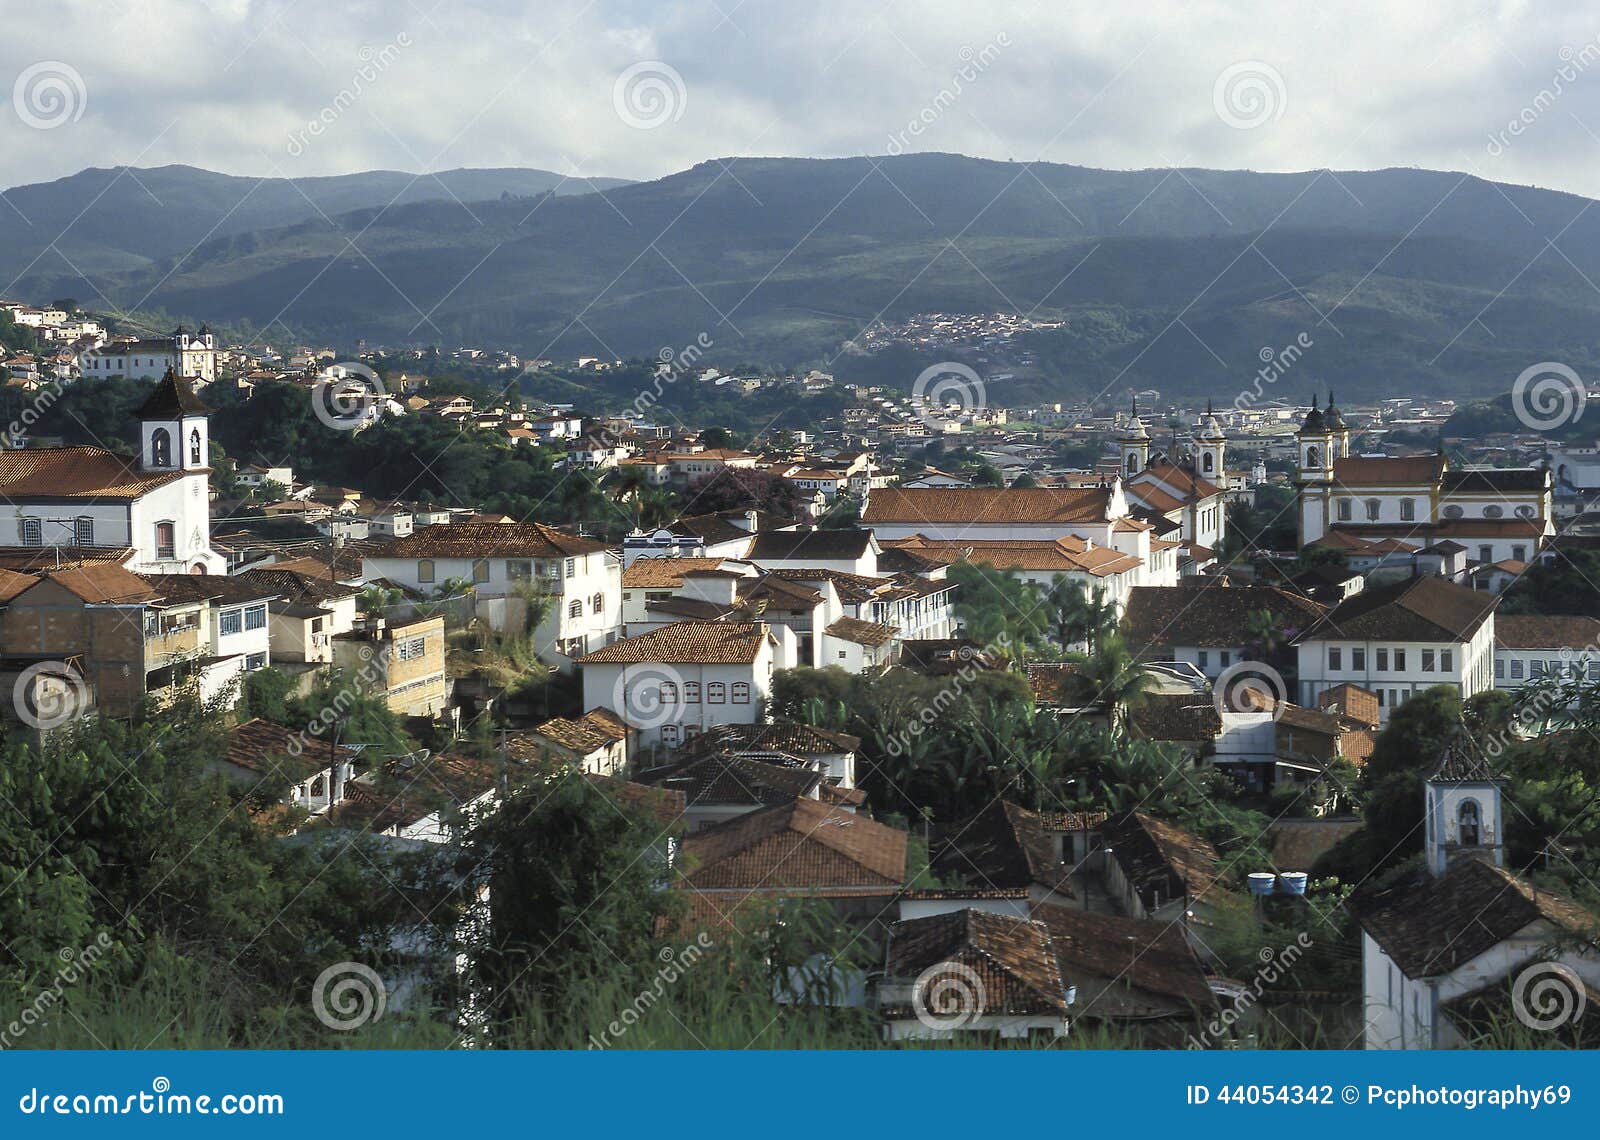 view of mariana, minas gerais, brazil.